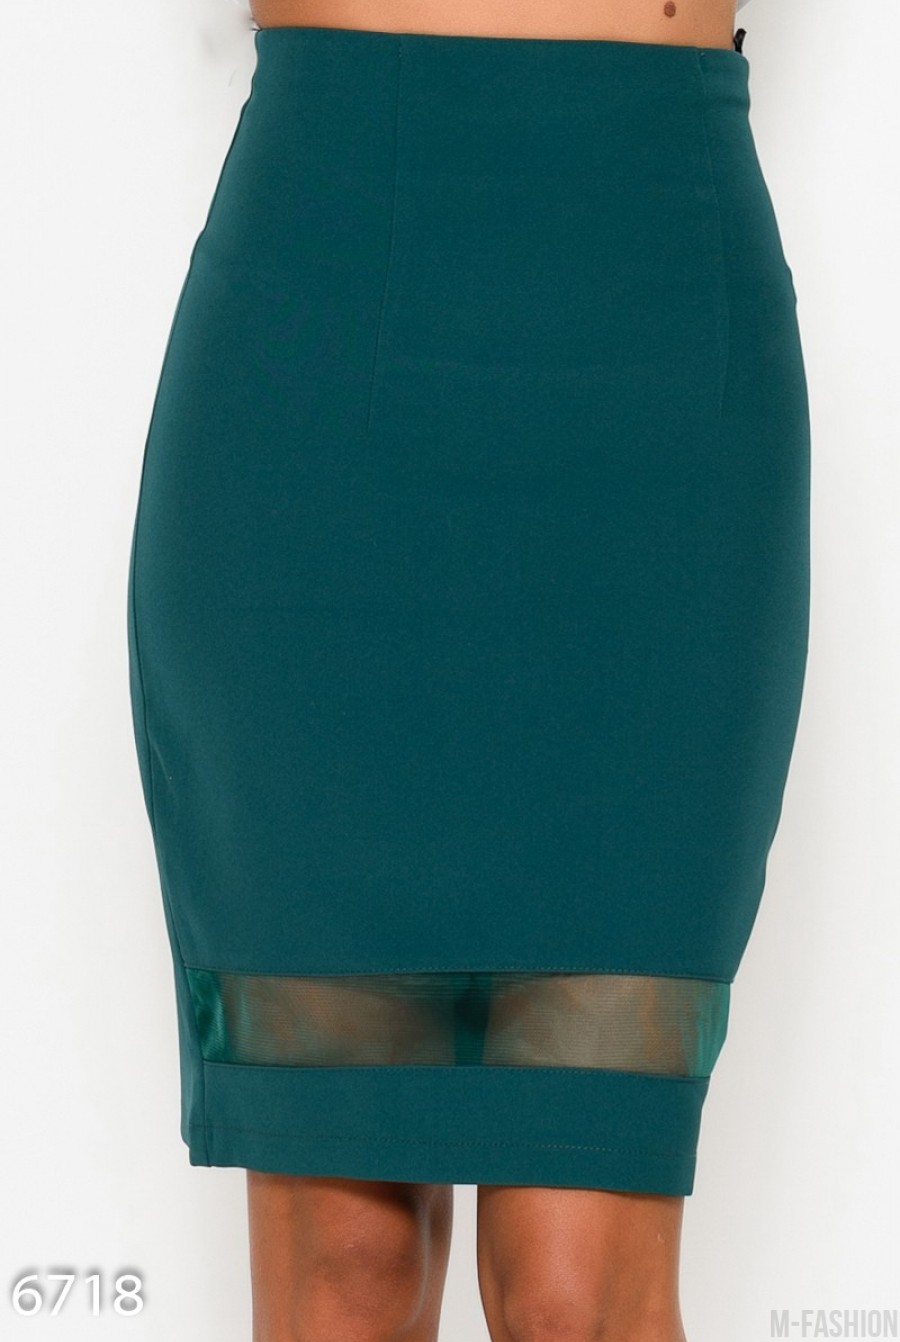 Зеленая юбка карандаш с полупрозрачной вставкой по низу изделия - Фото 1